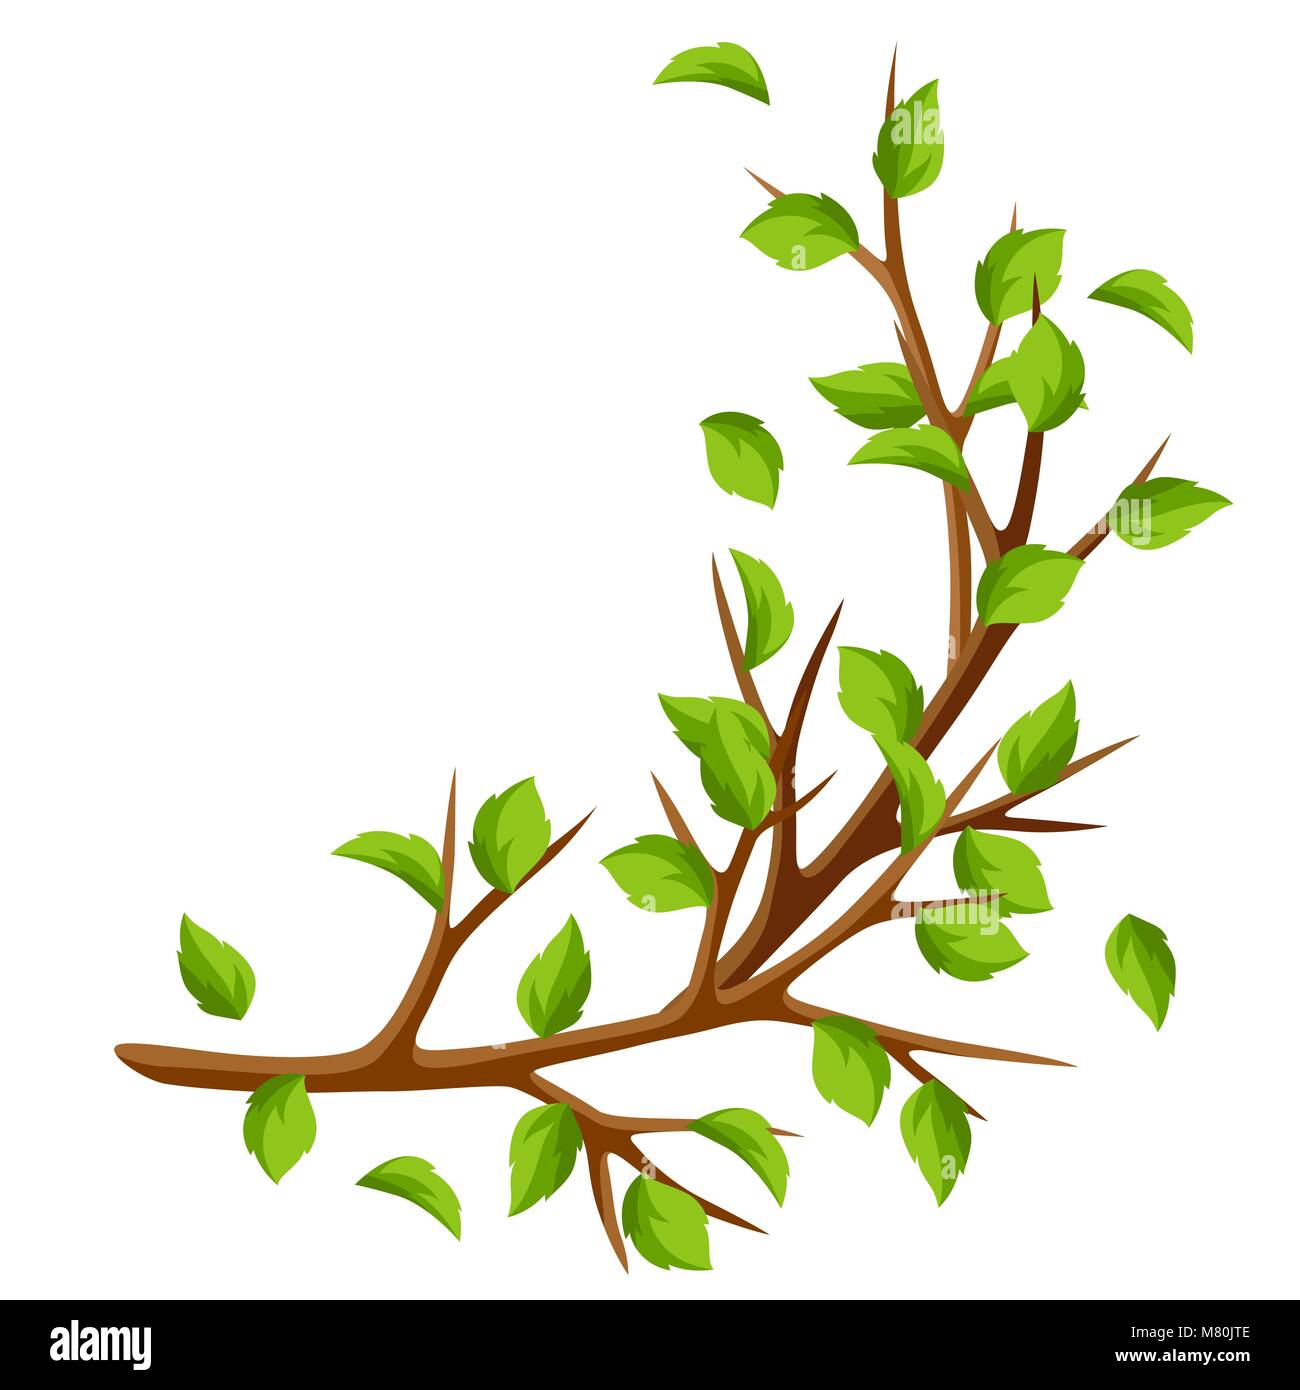 Direction générale de l'été de l'arbre et de feuilles vertes. Illustration de saison Illustration de Vecteur